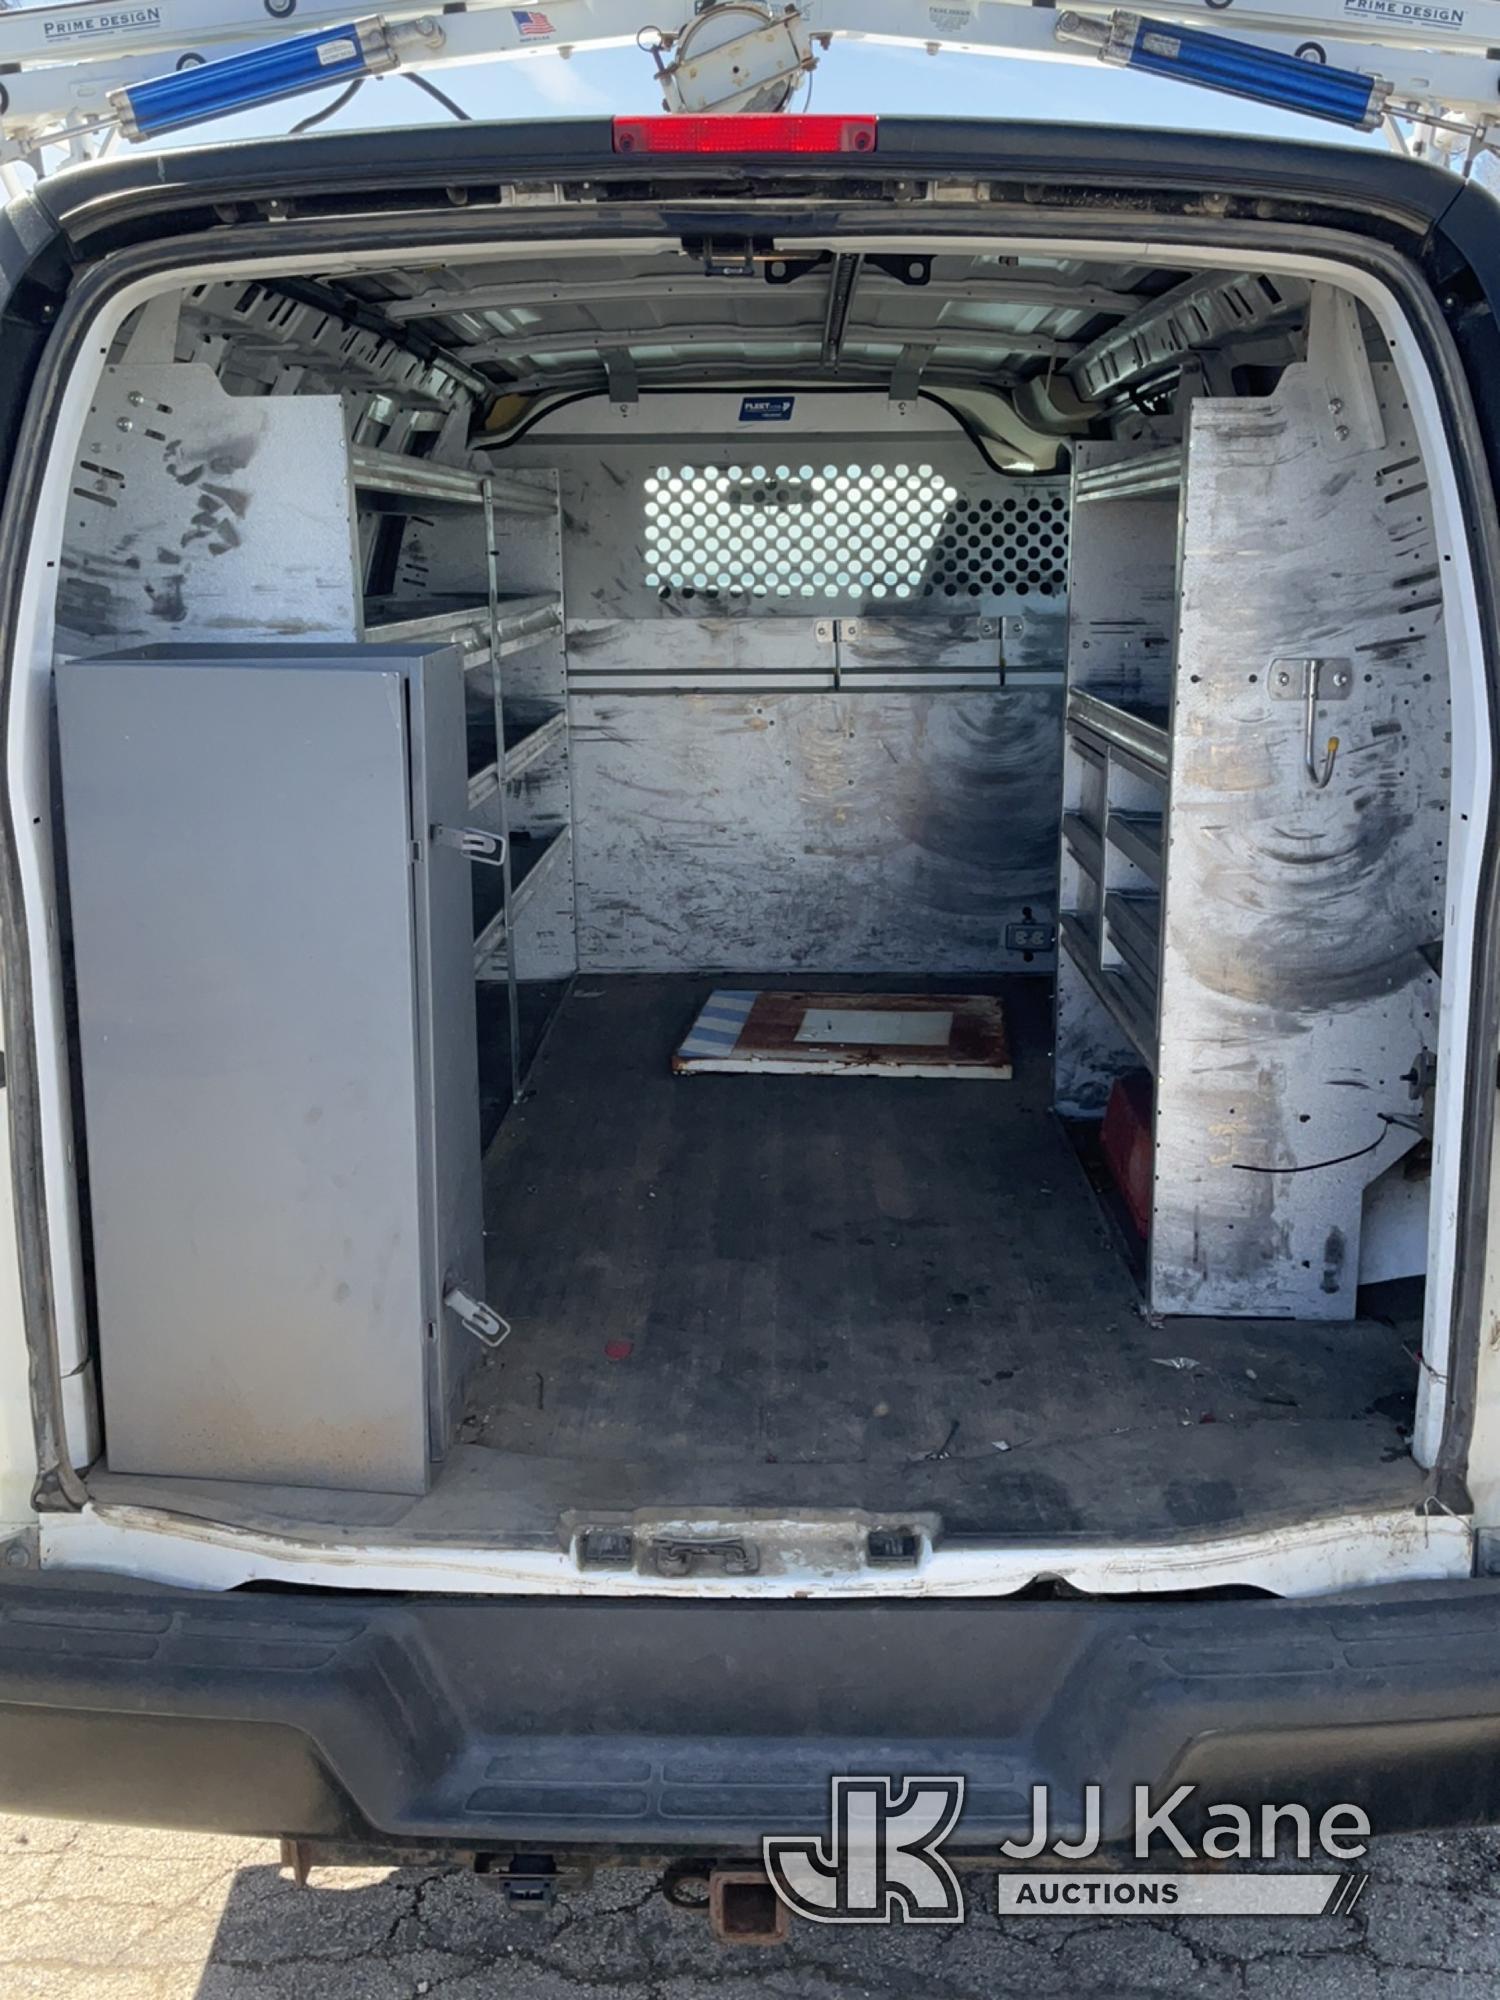 (South Beloit, IL) 2011 Chevrolet Express G2500 Cargo Van Runs & Moves) (Jump to Start-Needs Battery